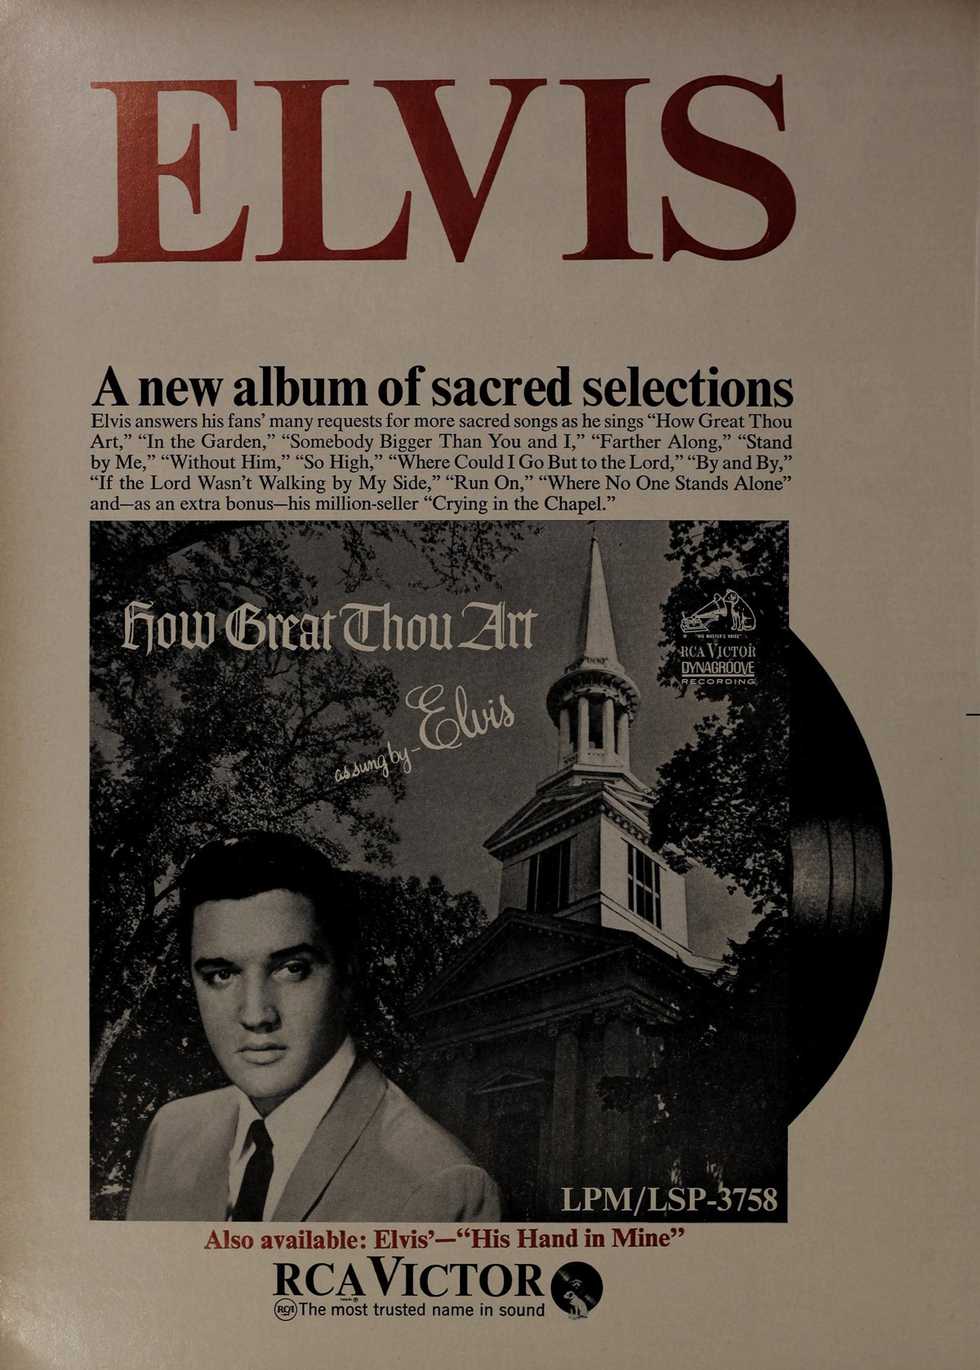 Elvis_Presley_-_How_Great_Thou_Art_ad.jpg